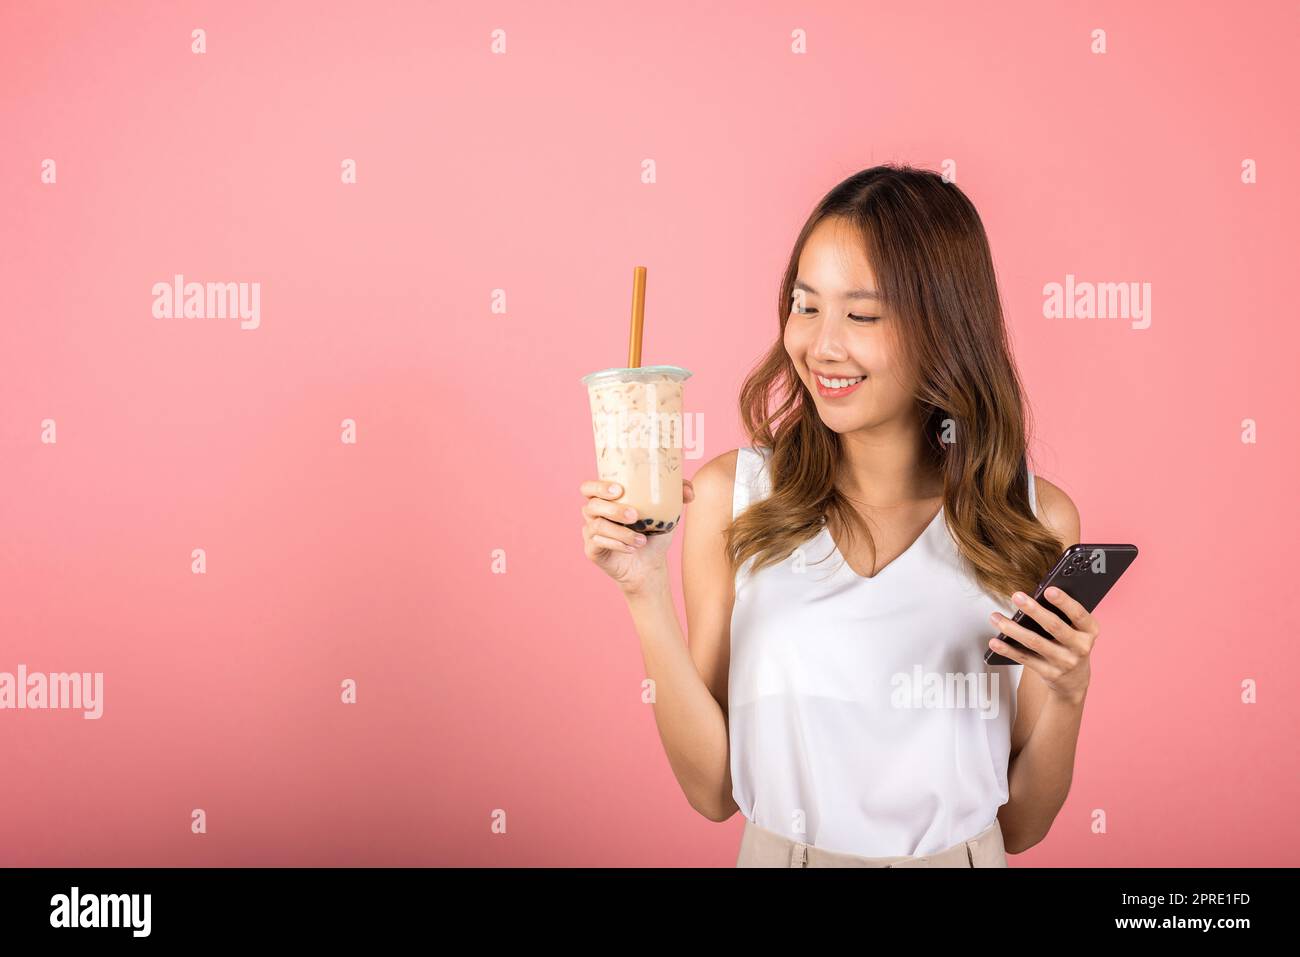 Eine Frau, die braunen, zuckergeschmacklichen Tapioka-Perlen-Seifenmilchtee trinkt Stockfoto